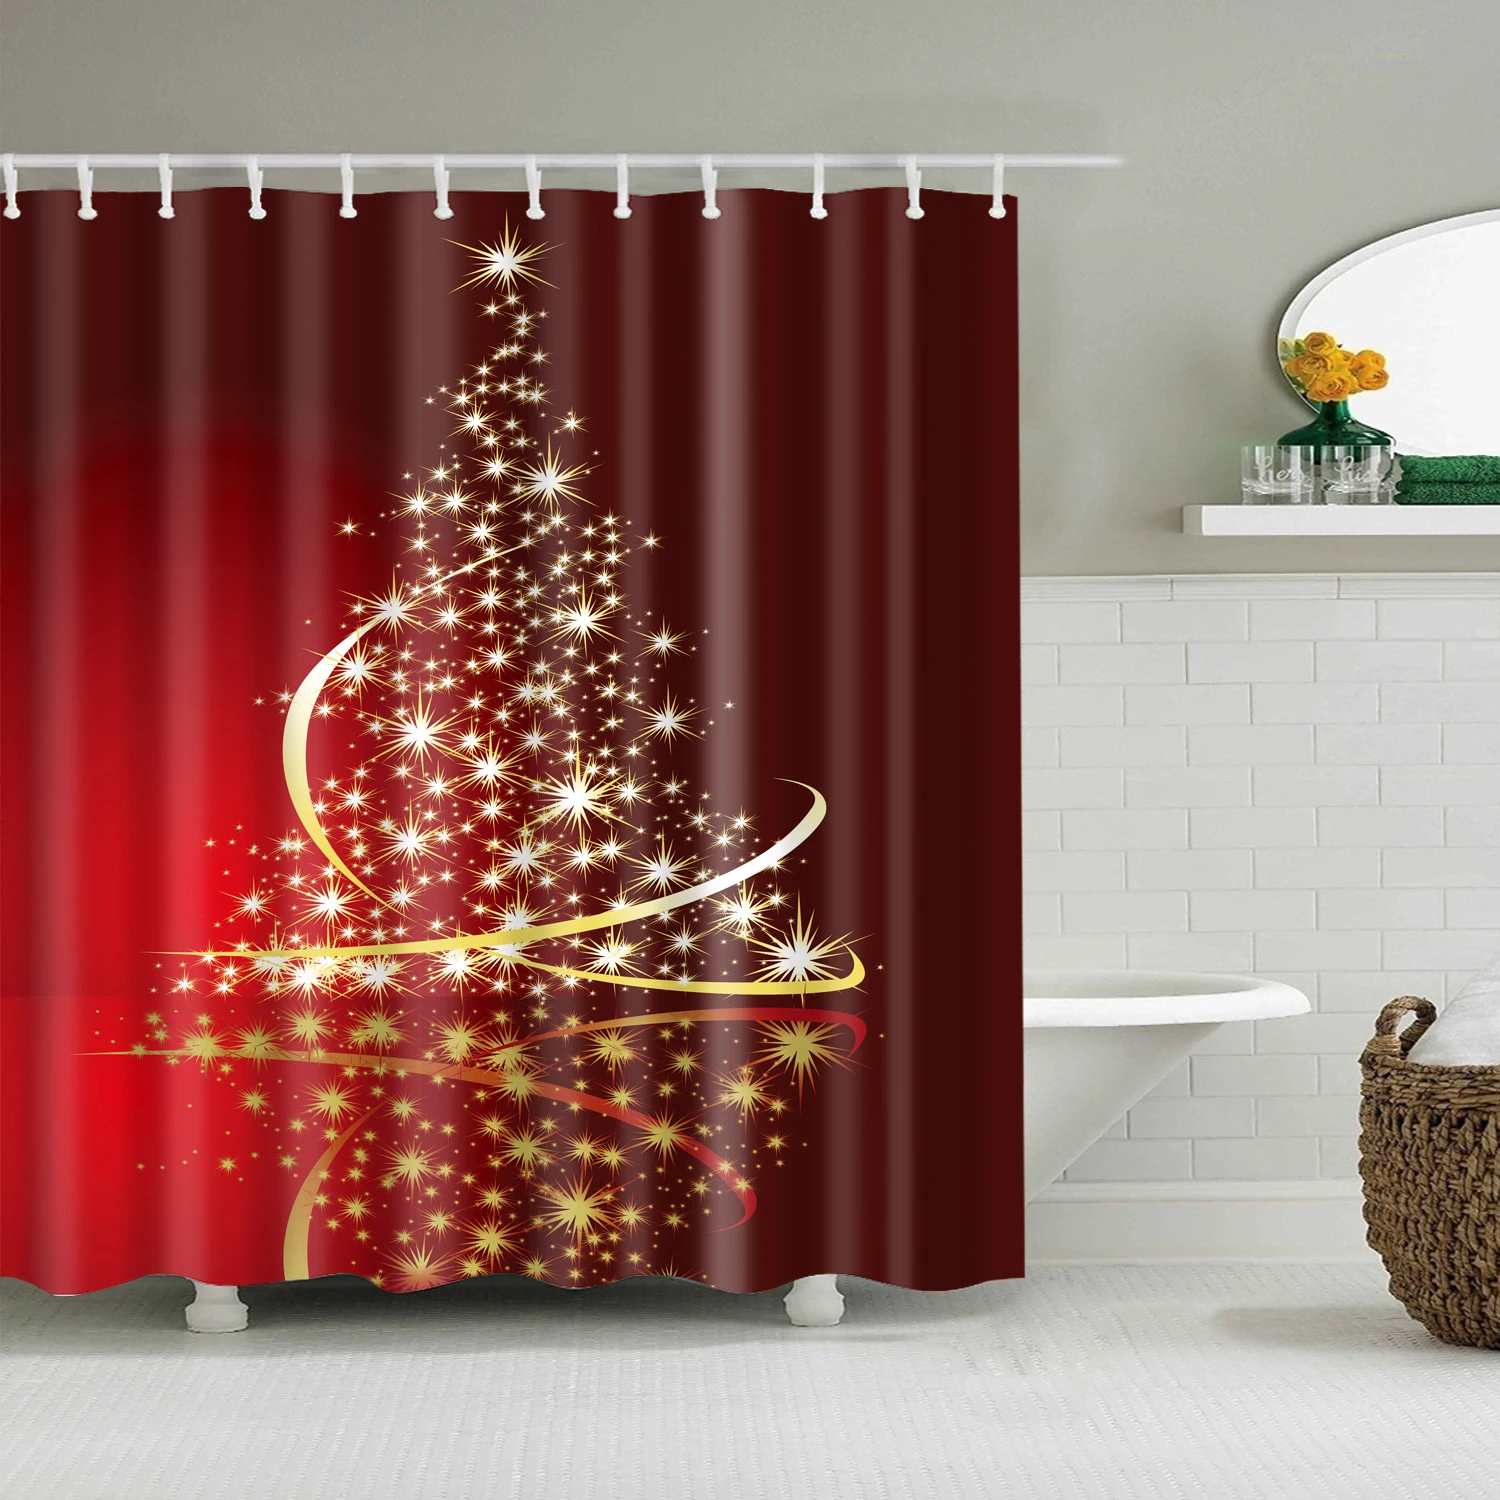 Светящаяся Рождественская занавеска для душа, Новогодняя Водонепроницаемая красная занавеска s для душа, ванной комнаты, рождественские украшения, подарки 200x150 см - Цвет: B1020